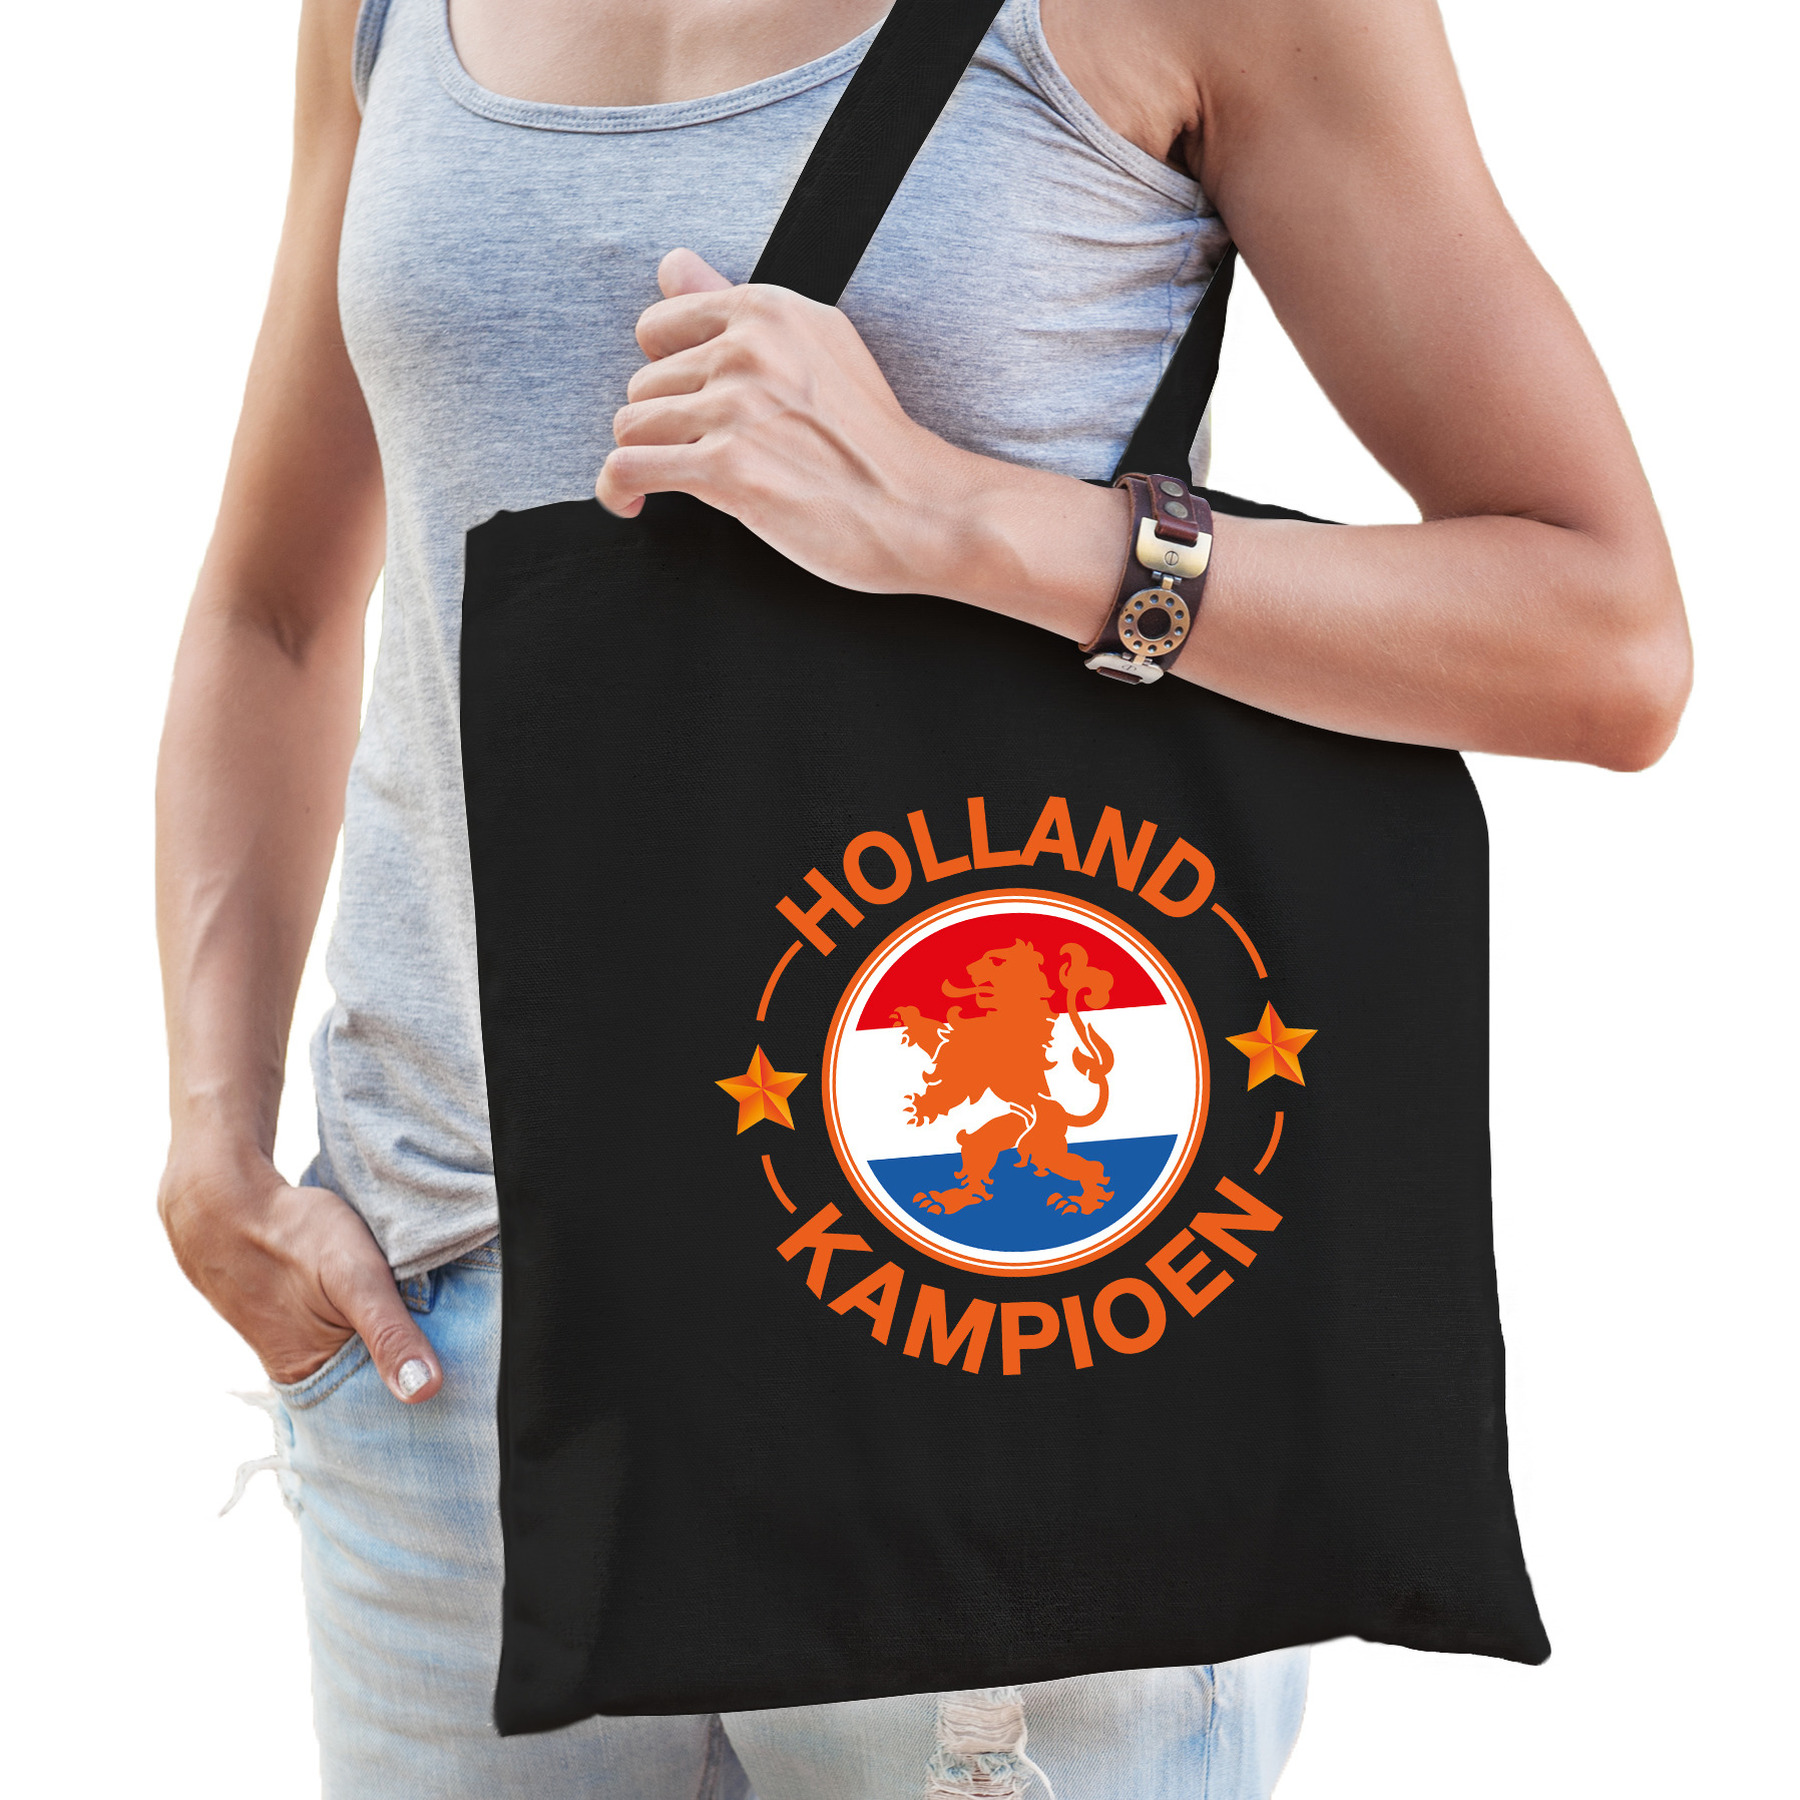 Holland kampioen leeuw oranje supporter tas zwart voor dames en heren EK- WK voetbal-Koningsdag